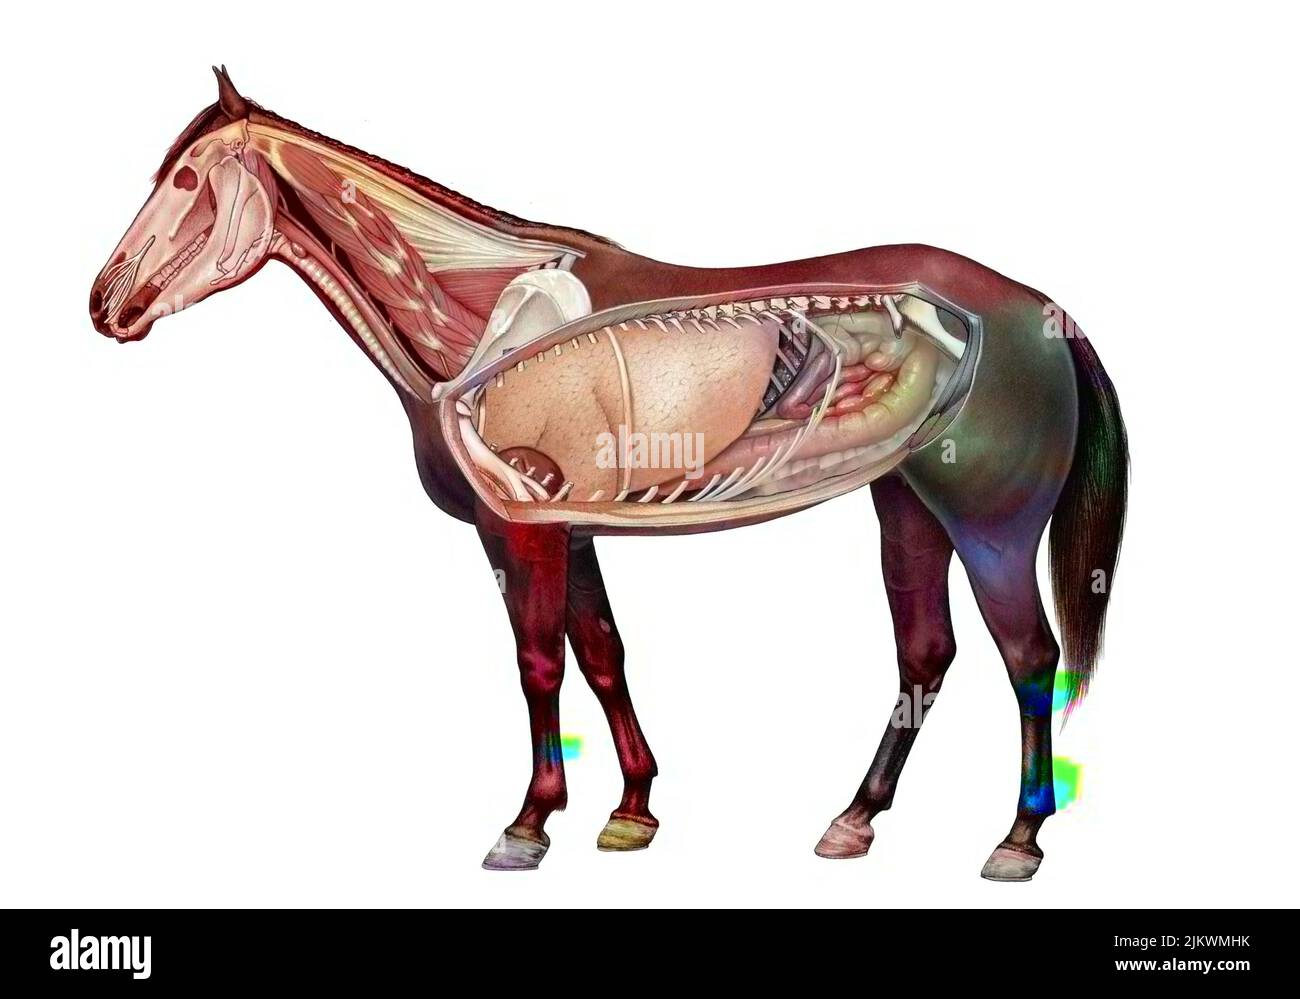 Anatomie eines Pferdes, das die Lunge, das Verdauungssystem zeigt. Stockfoto